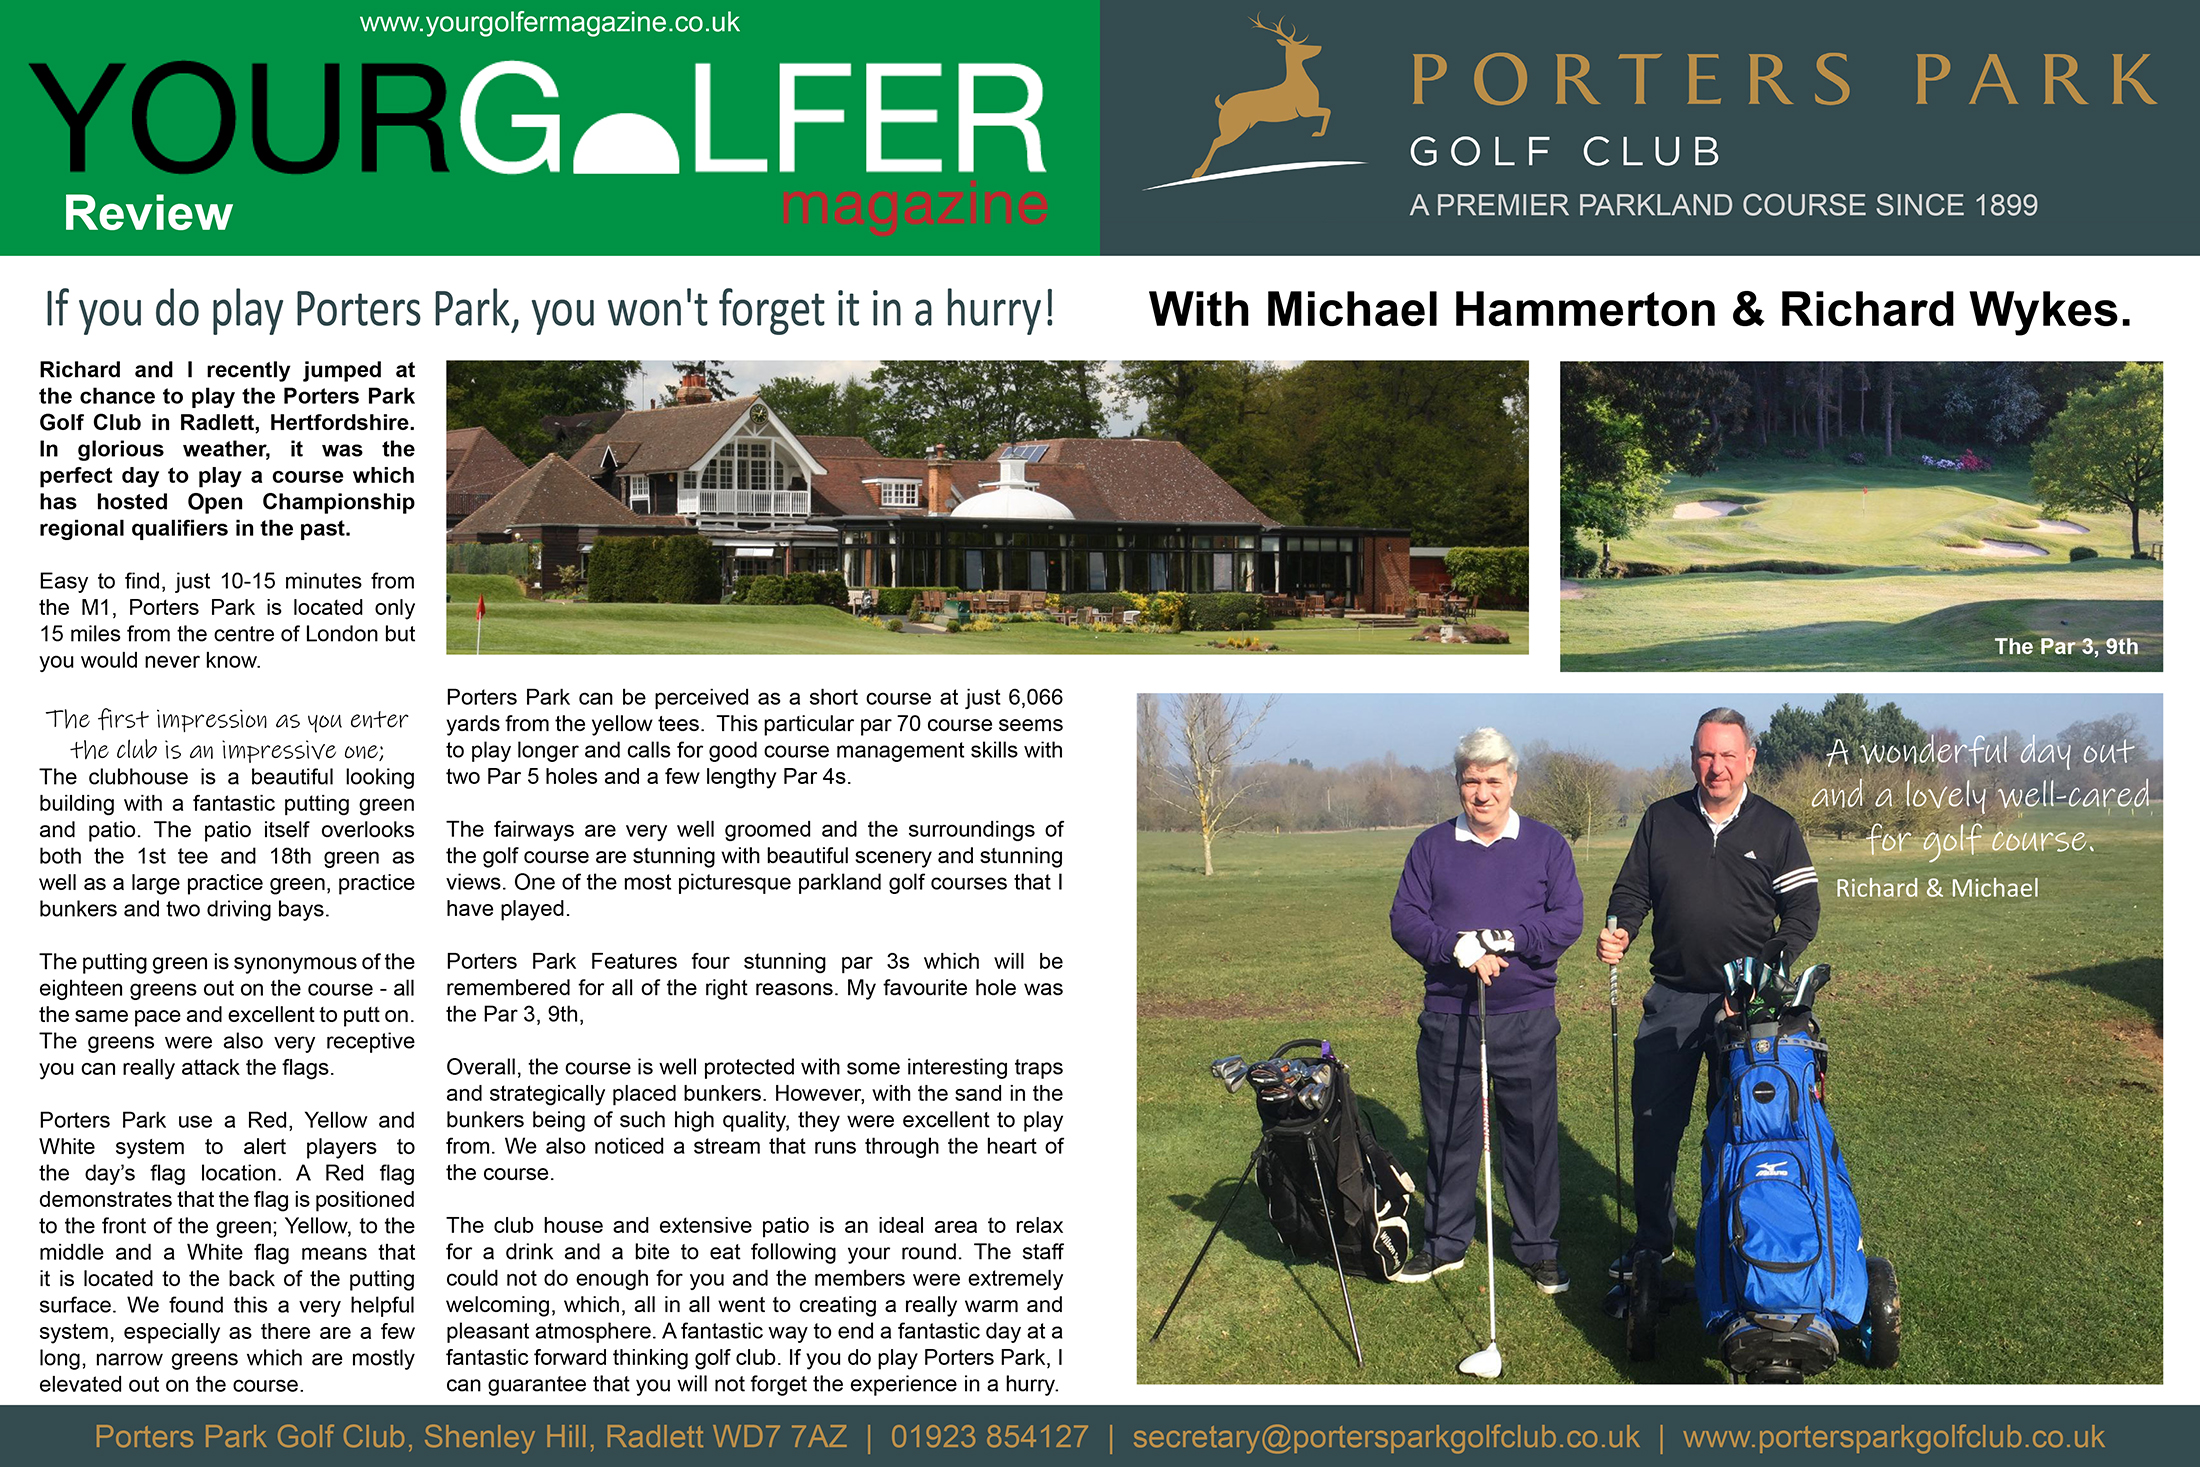 your golfer magazine reviews Porters Park golf club